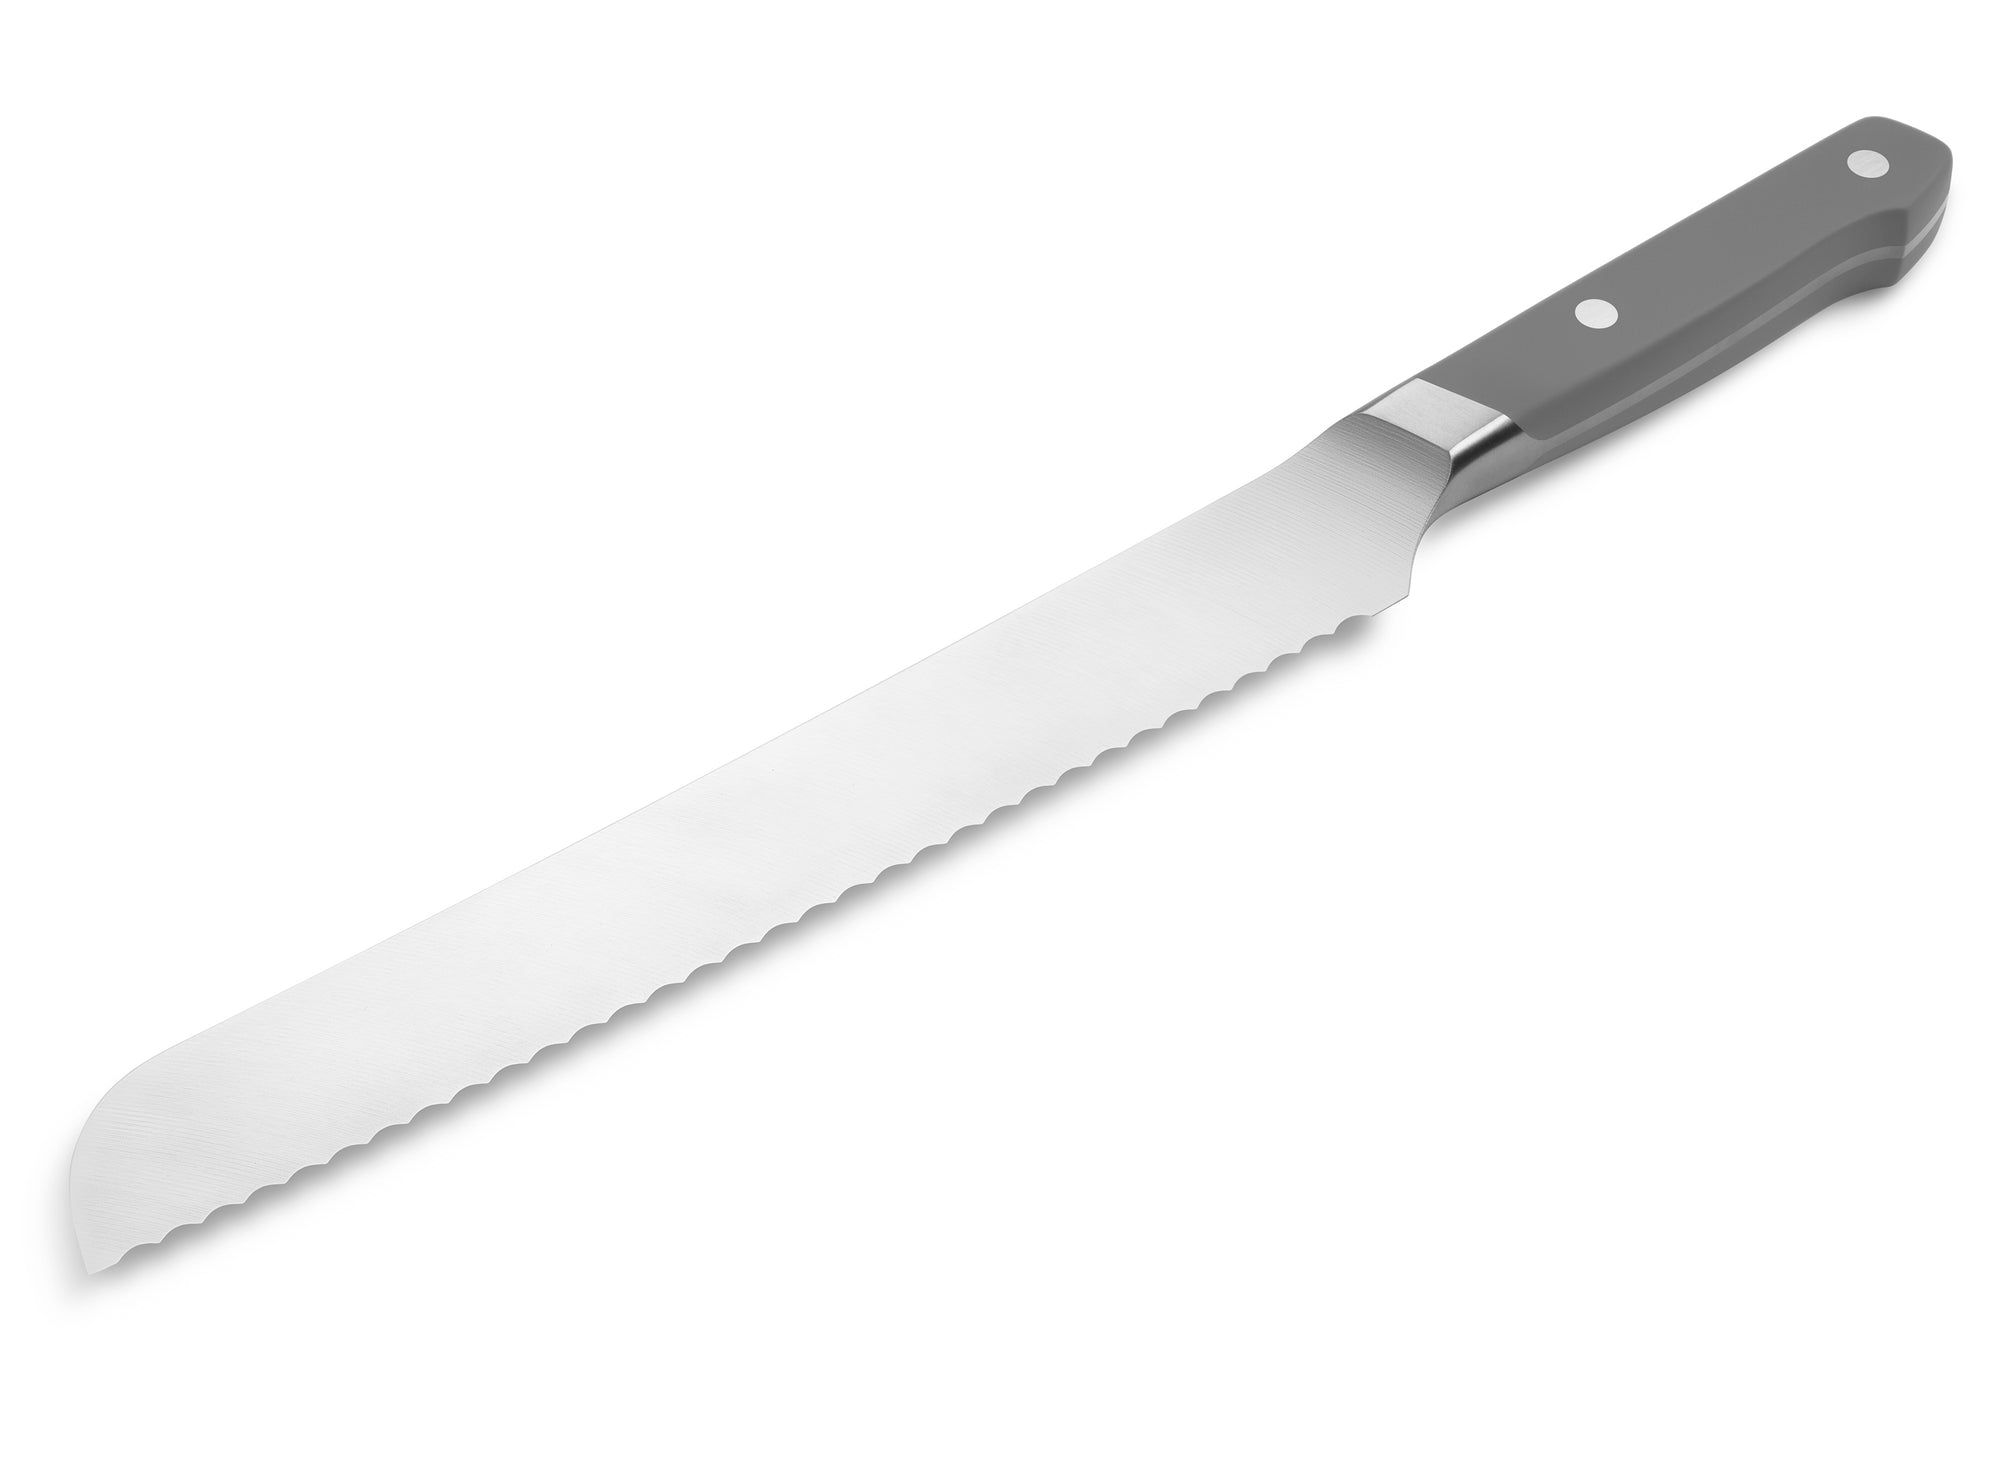 Misen MK-1033-2 Serrated Bread Knife, 9.5 Inch Bread Cutter, Blue